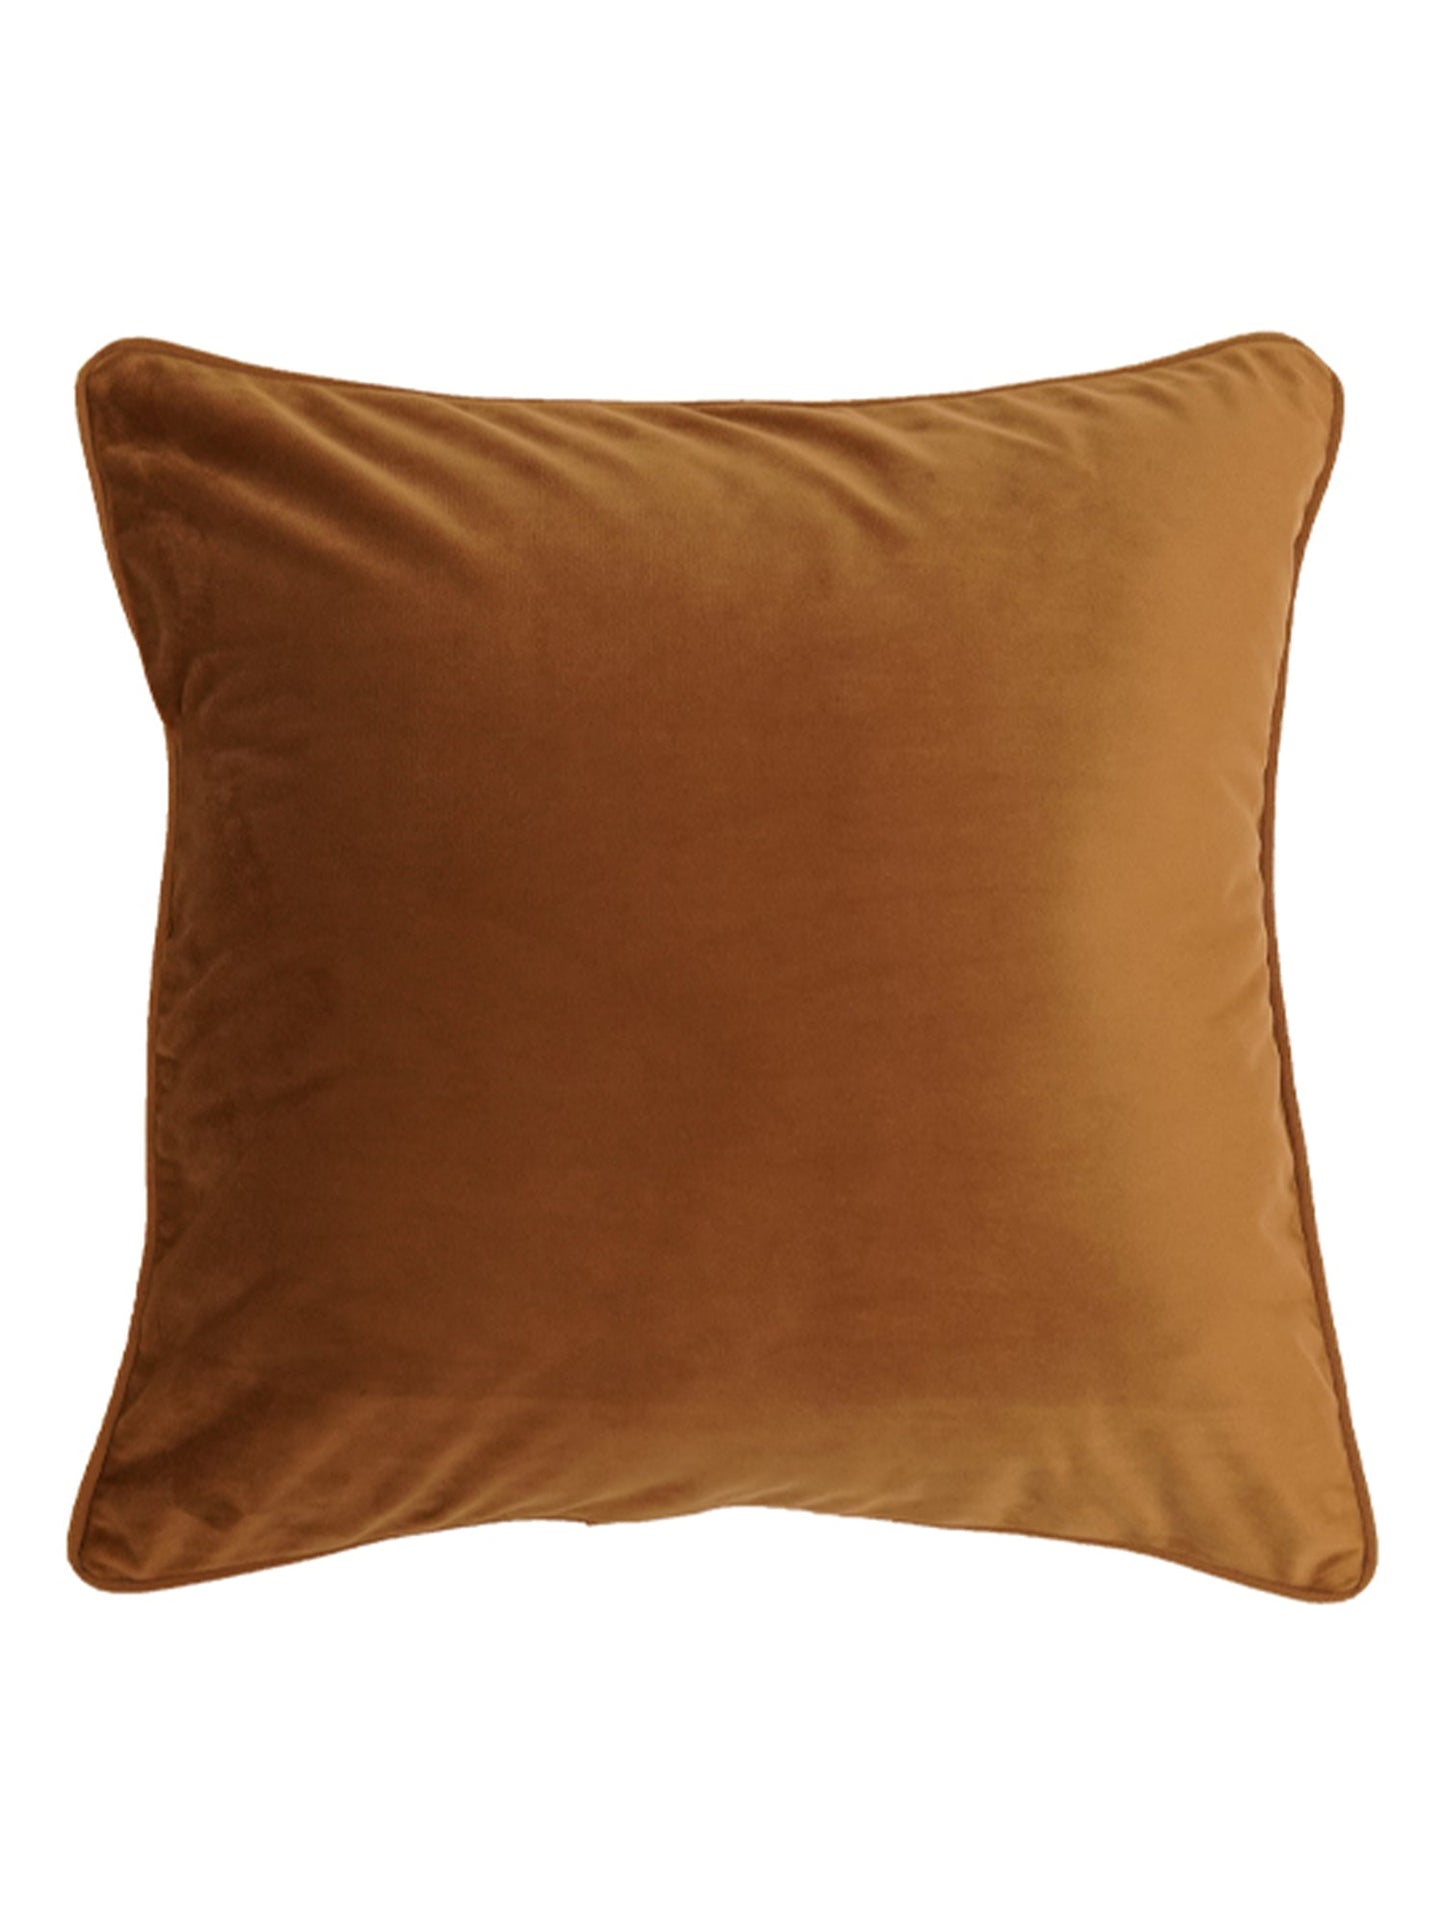 Cushion Cover Velvet  Golden Brown - 20"X 20"